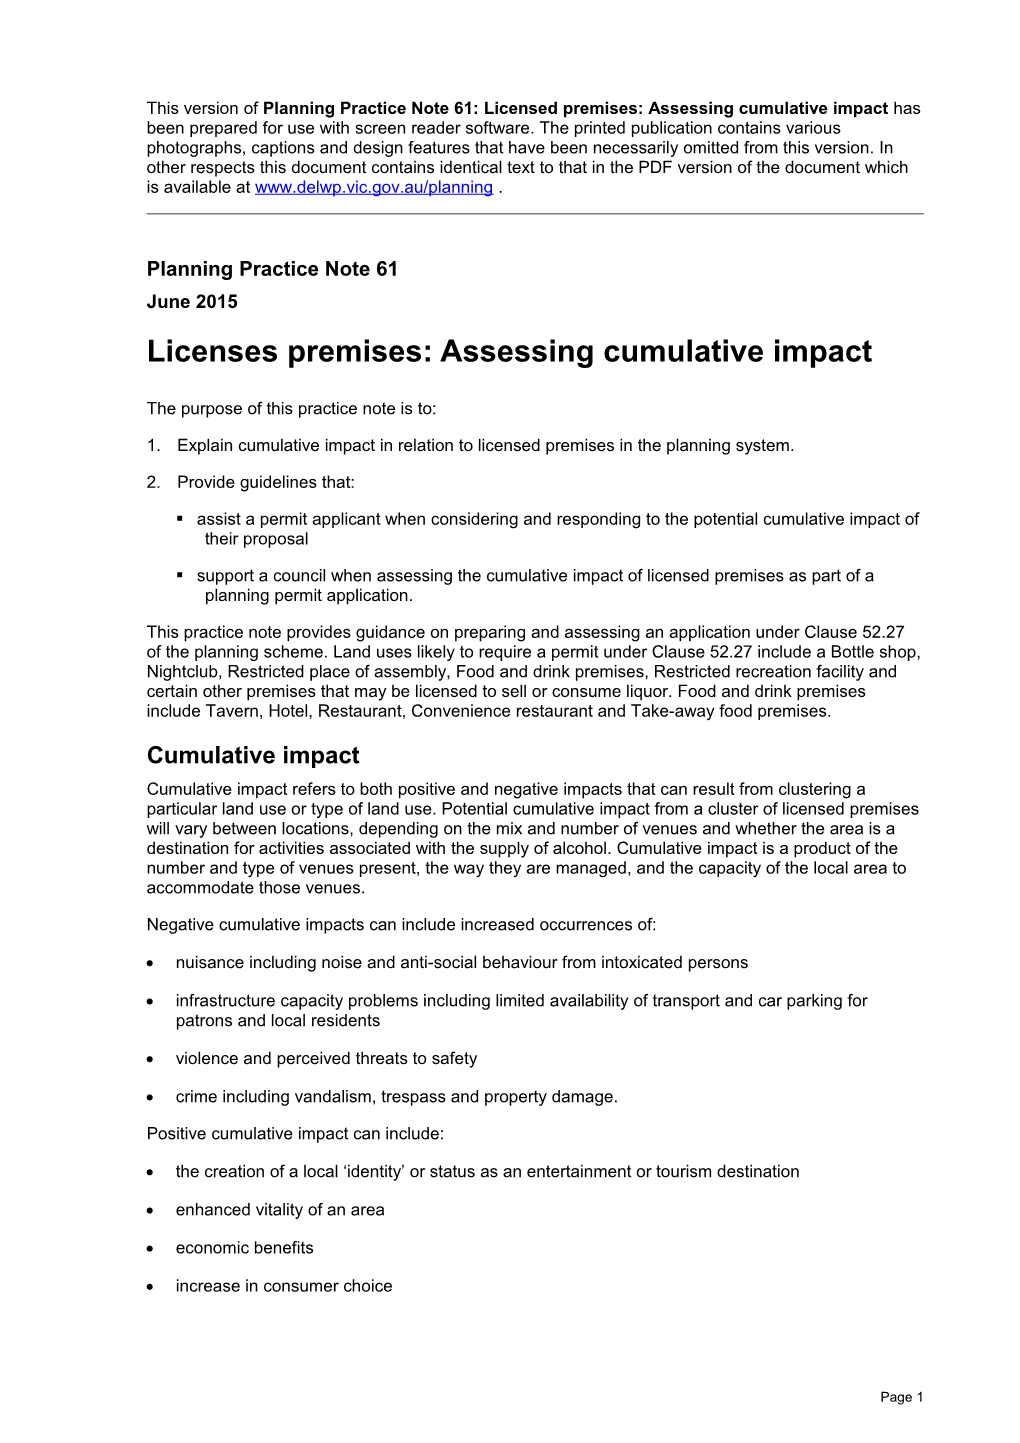 Planning Practice Note 61: Licensed Premises: Assessing Cumulative Impact